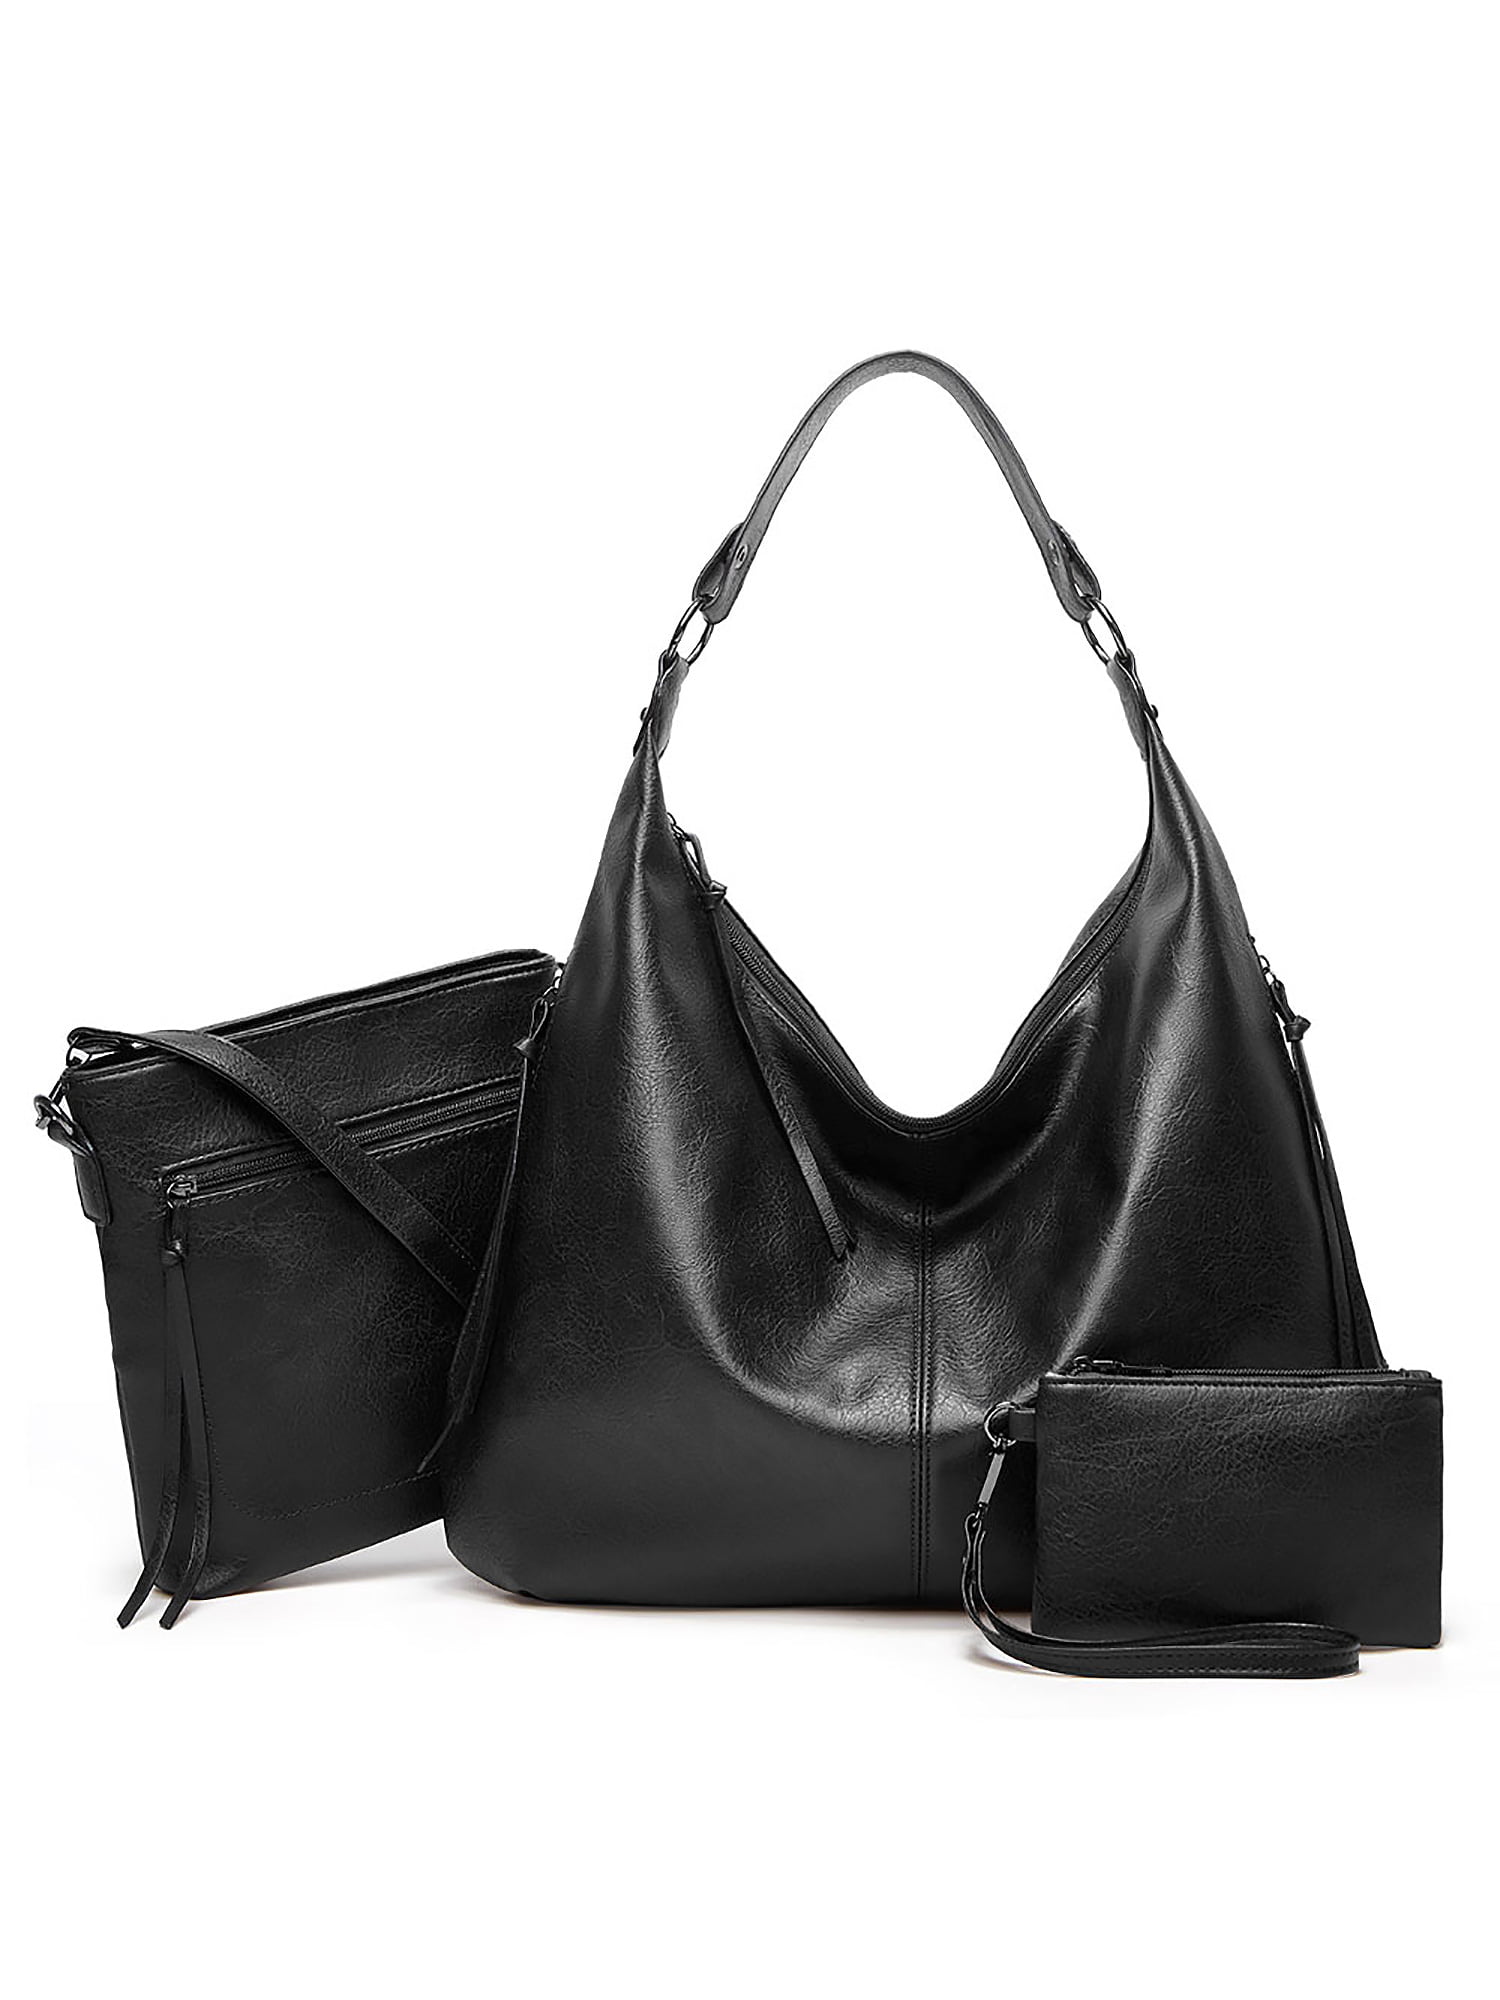 Large Leather Handbag Womens Shoulder Bags Tote Purse Messenger Hobo Satchel Bag 